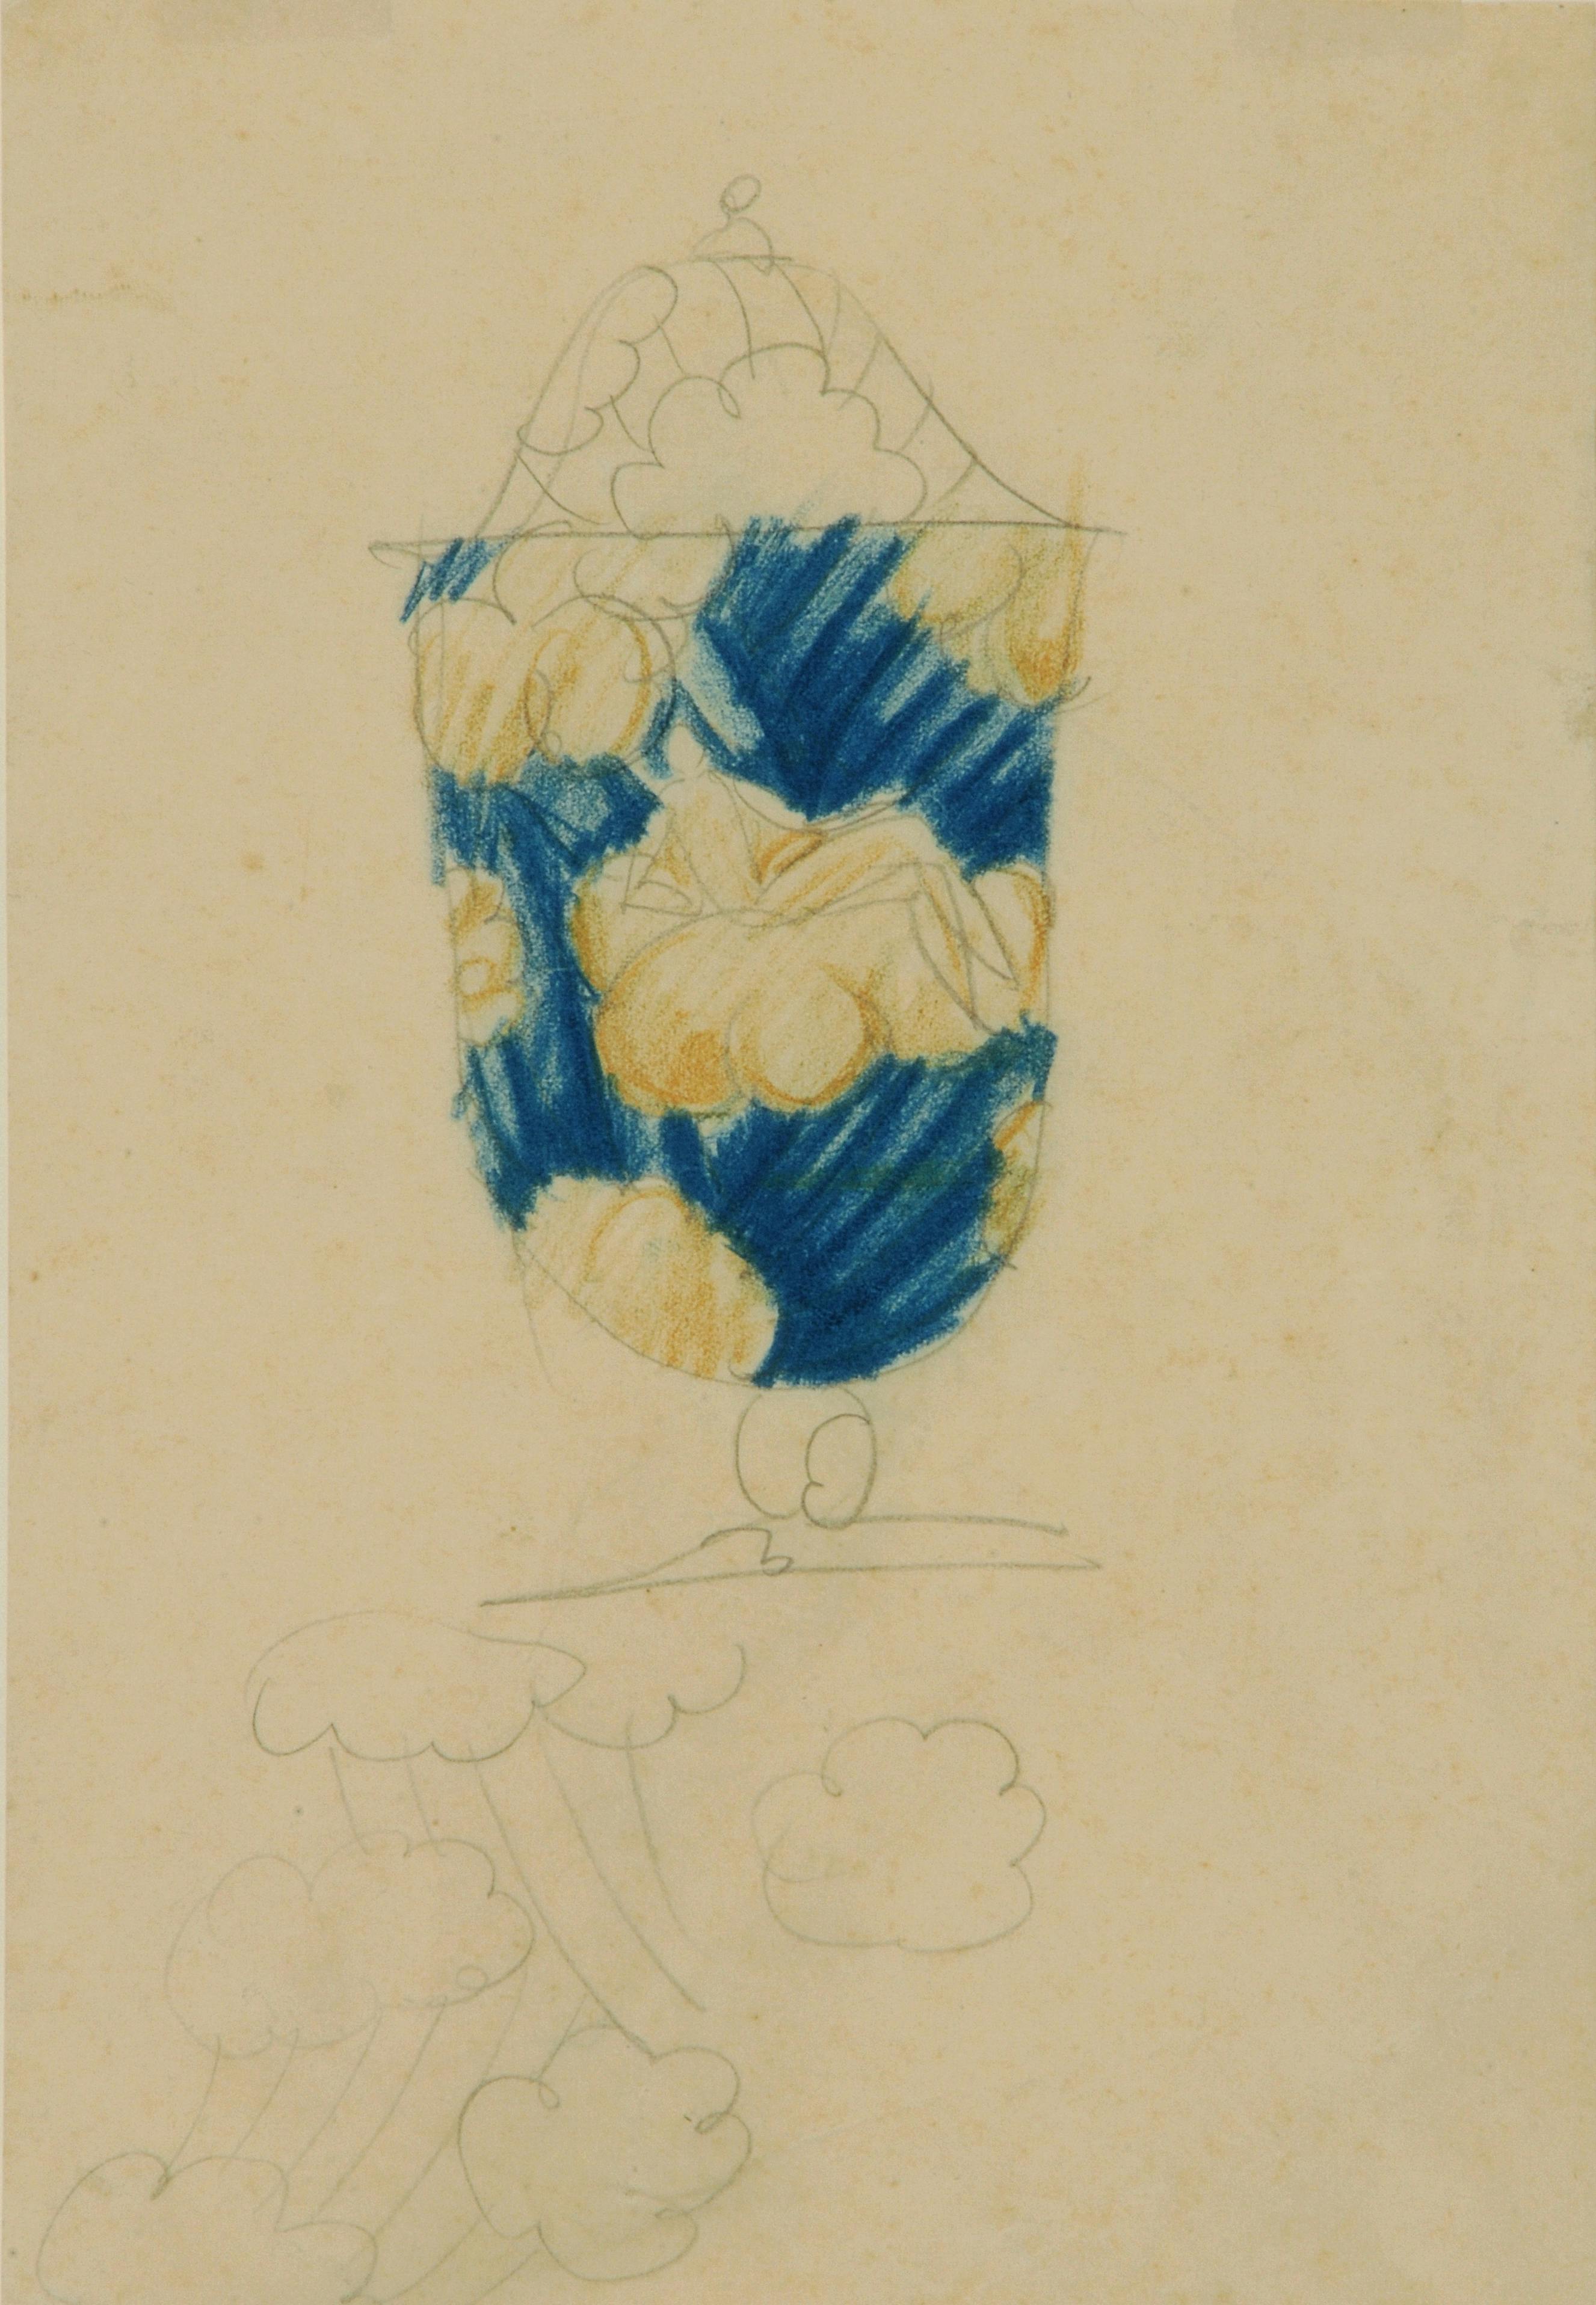 disegno a matita di vaso con decoro in blu e oro con figure di donne su nuvole